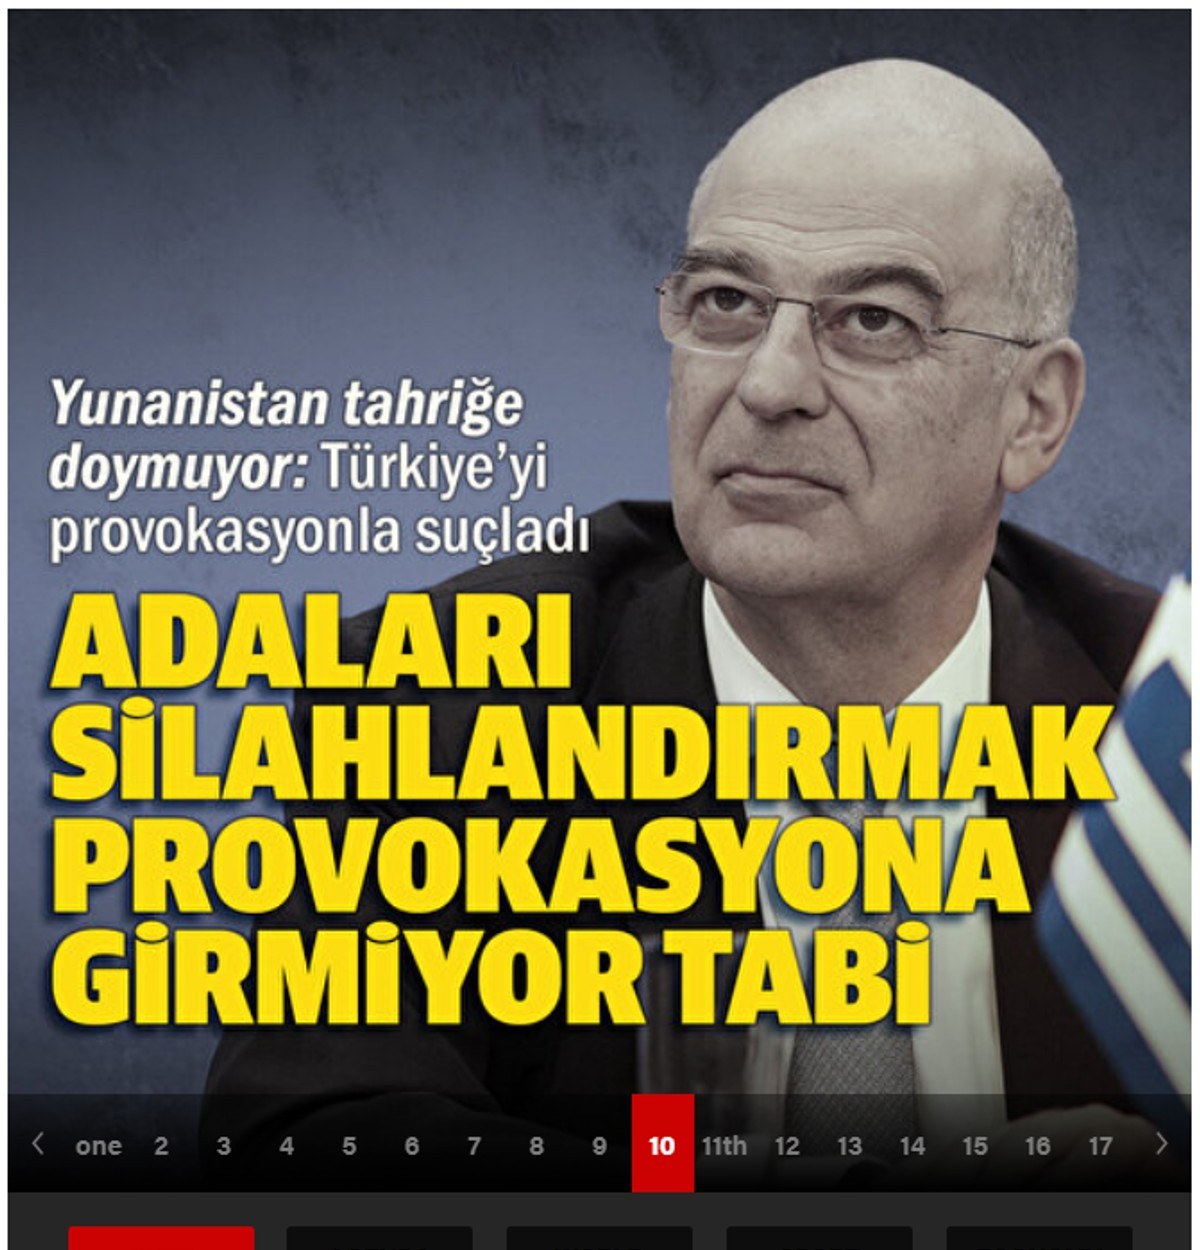 Αυτή τη φορά η Τουρκία τα έβαλε με τον Υπουργό Εξωτερικών Νίκο Δένδια χαρακτηρίζοντας σκανδαλώδη μια δήλωση που έκανε.